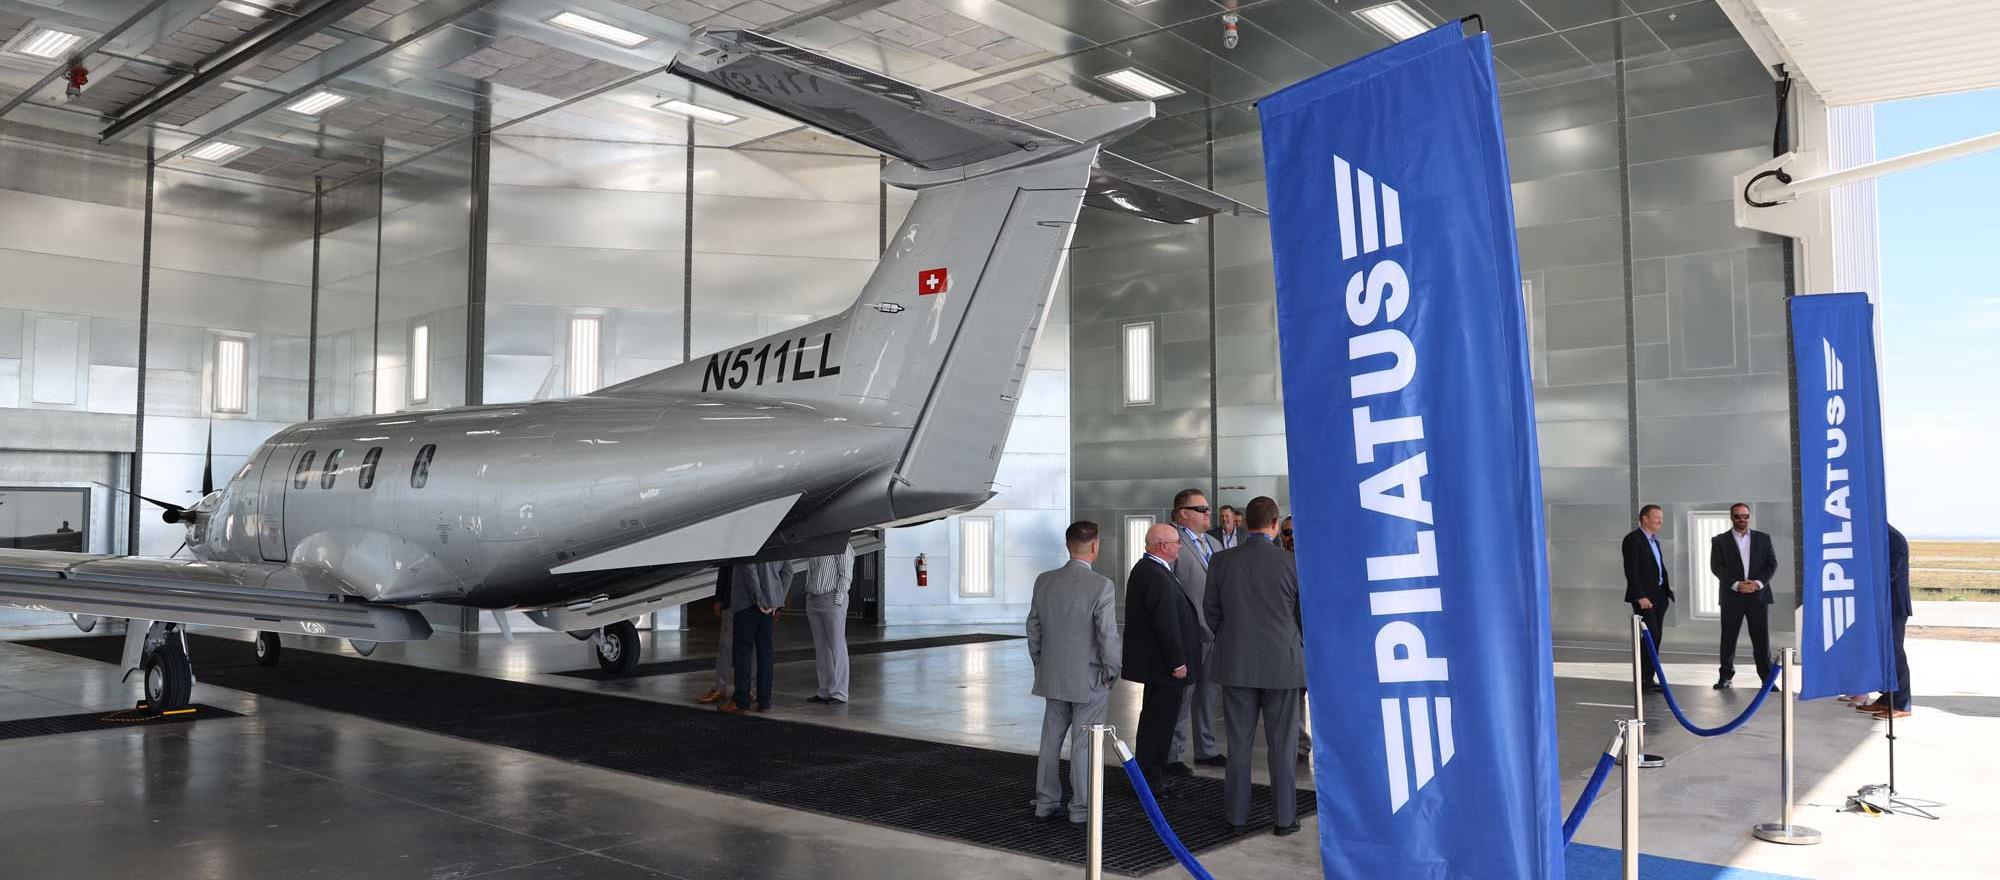 Pilatus PC-12NGX on display at its new aircraft paint facility